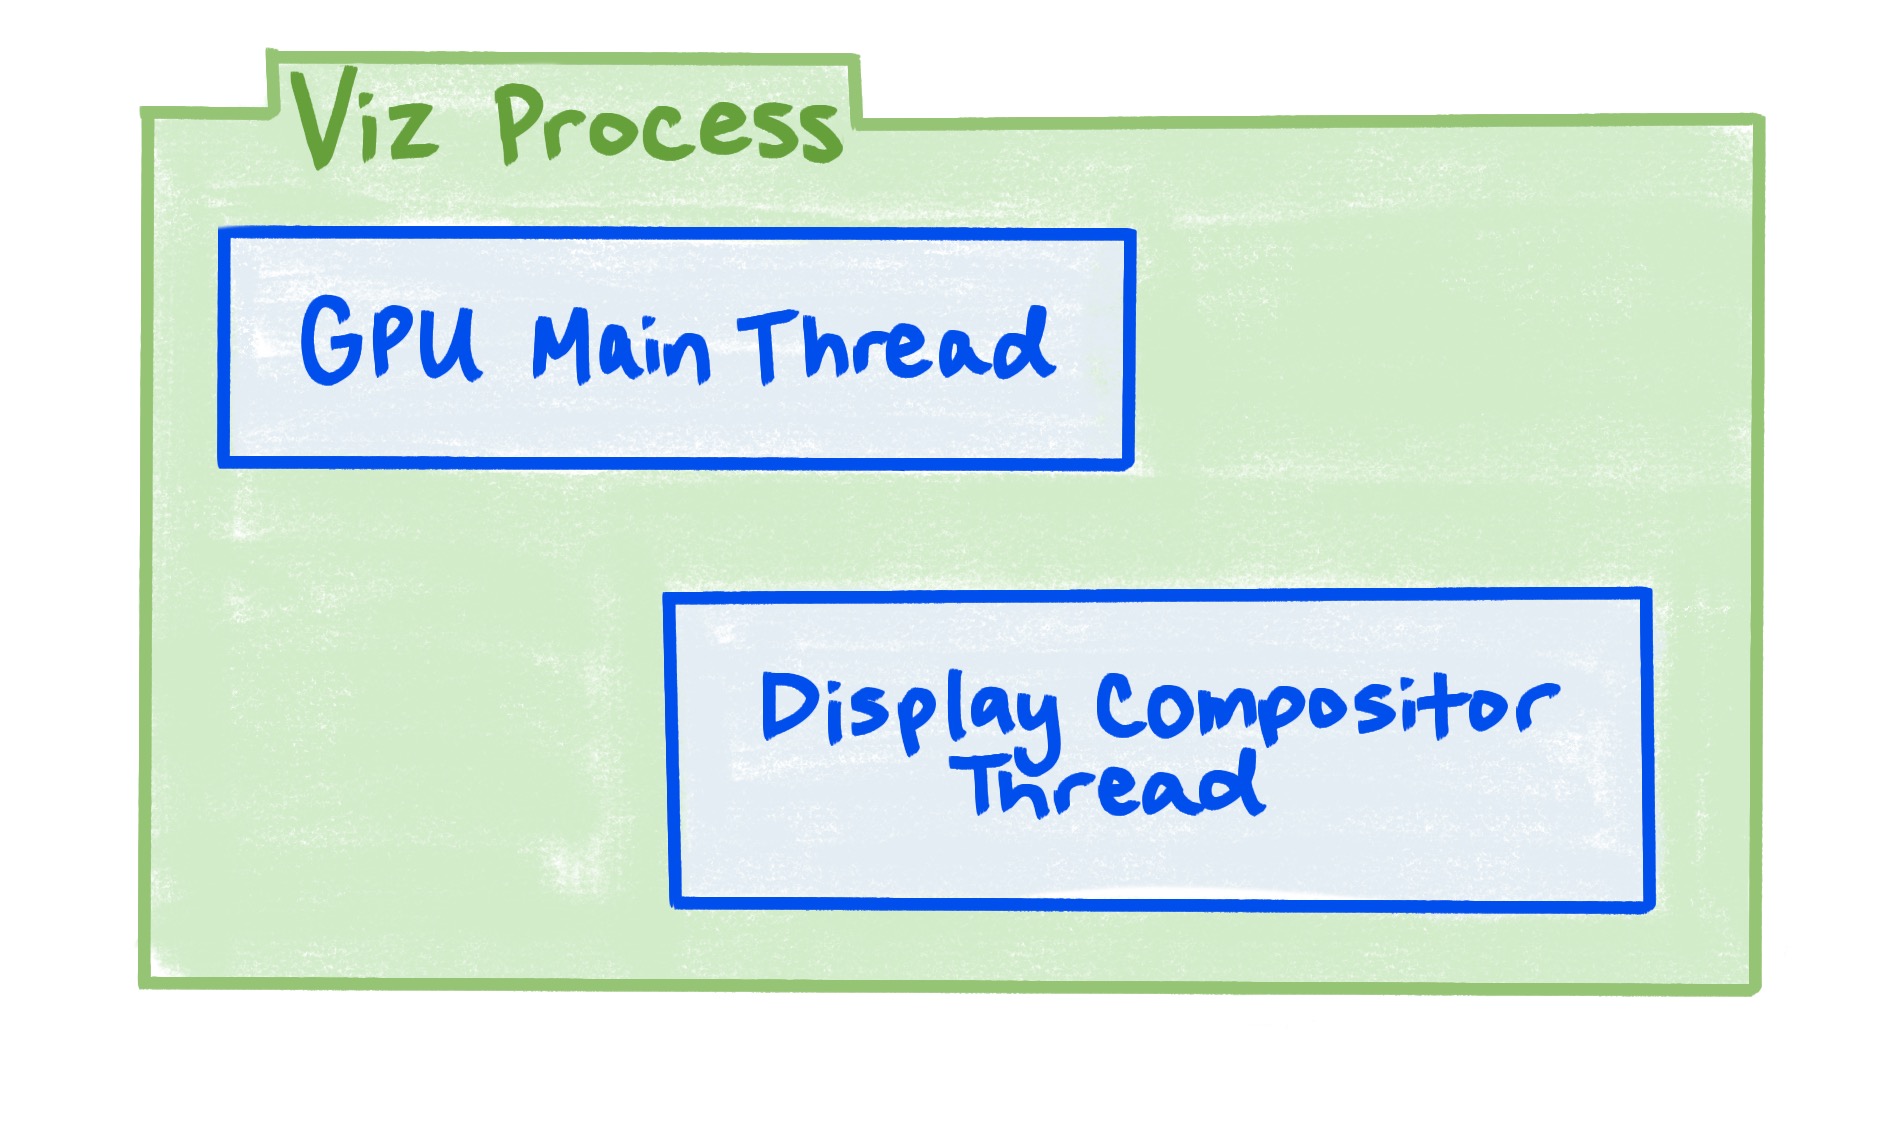 El proceso Viz incluye el subproceso principal de la GPU y el subproceso compositor de pantalla.